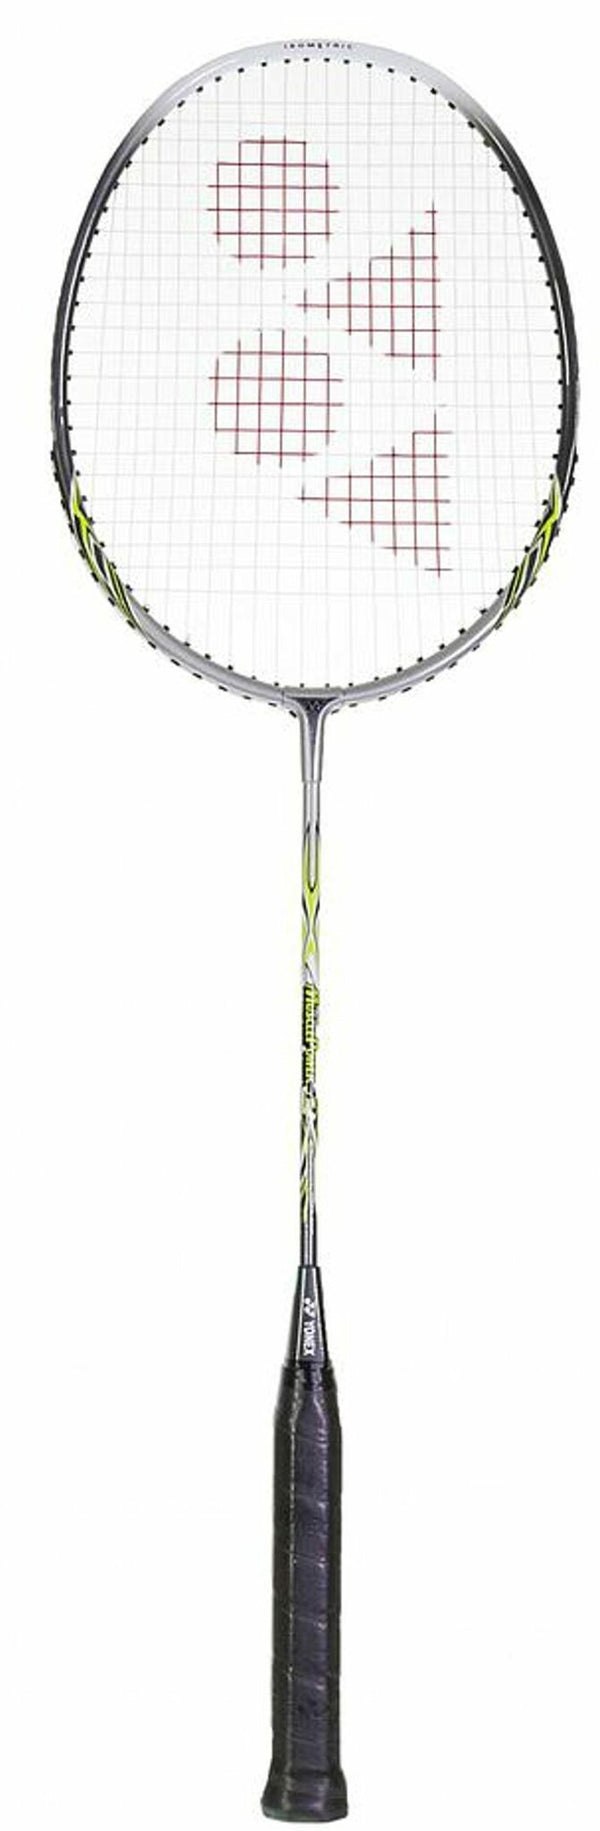 MP2 badmintonketcher